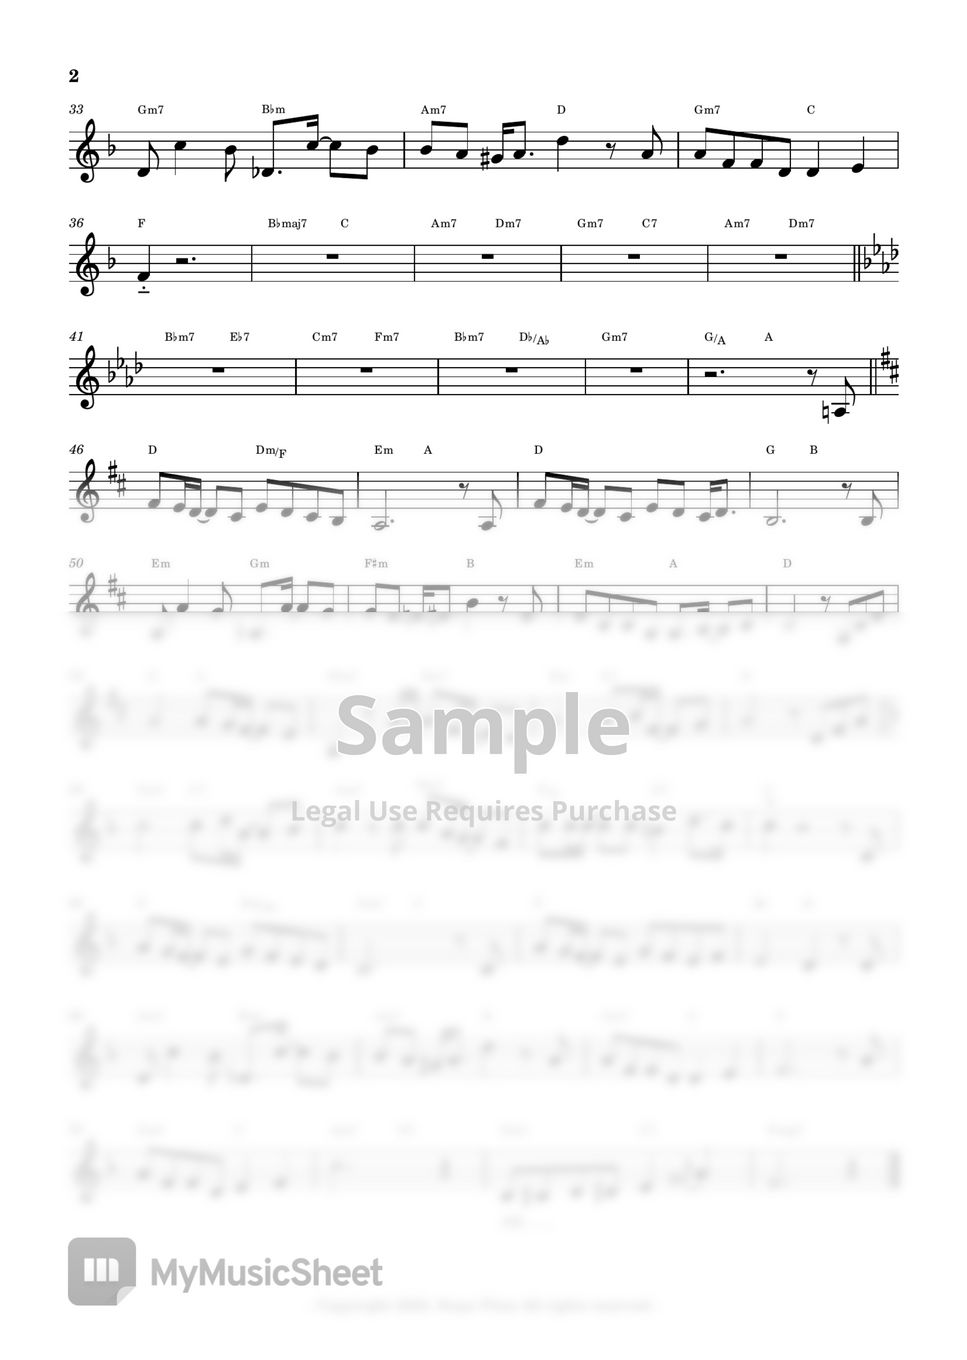 권진원 - Happy Birthday To You (Flute Sheet Music) by sonye flute